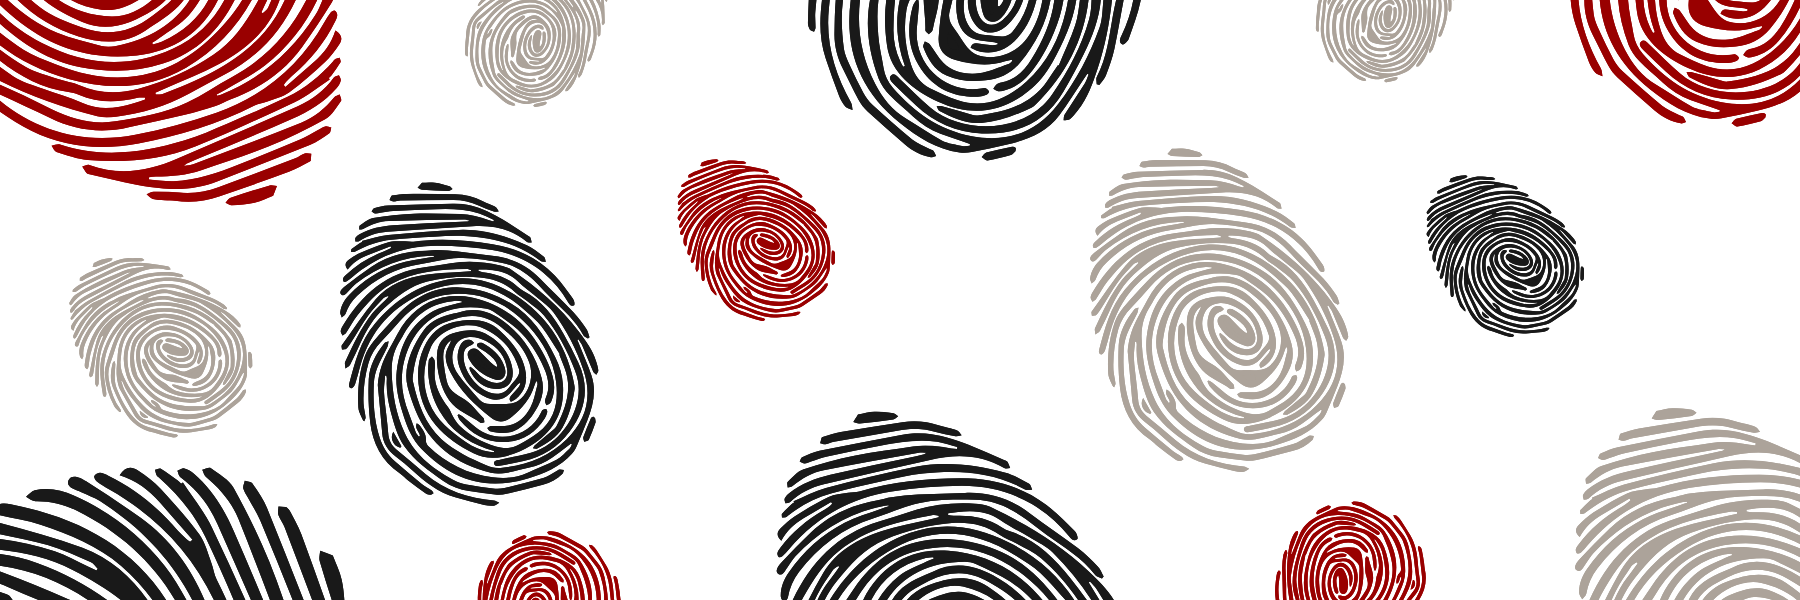 Crimson, black, and gray fingerprints.